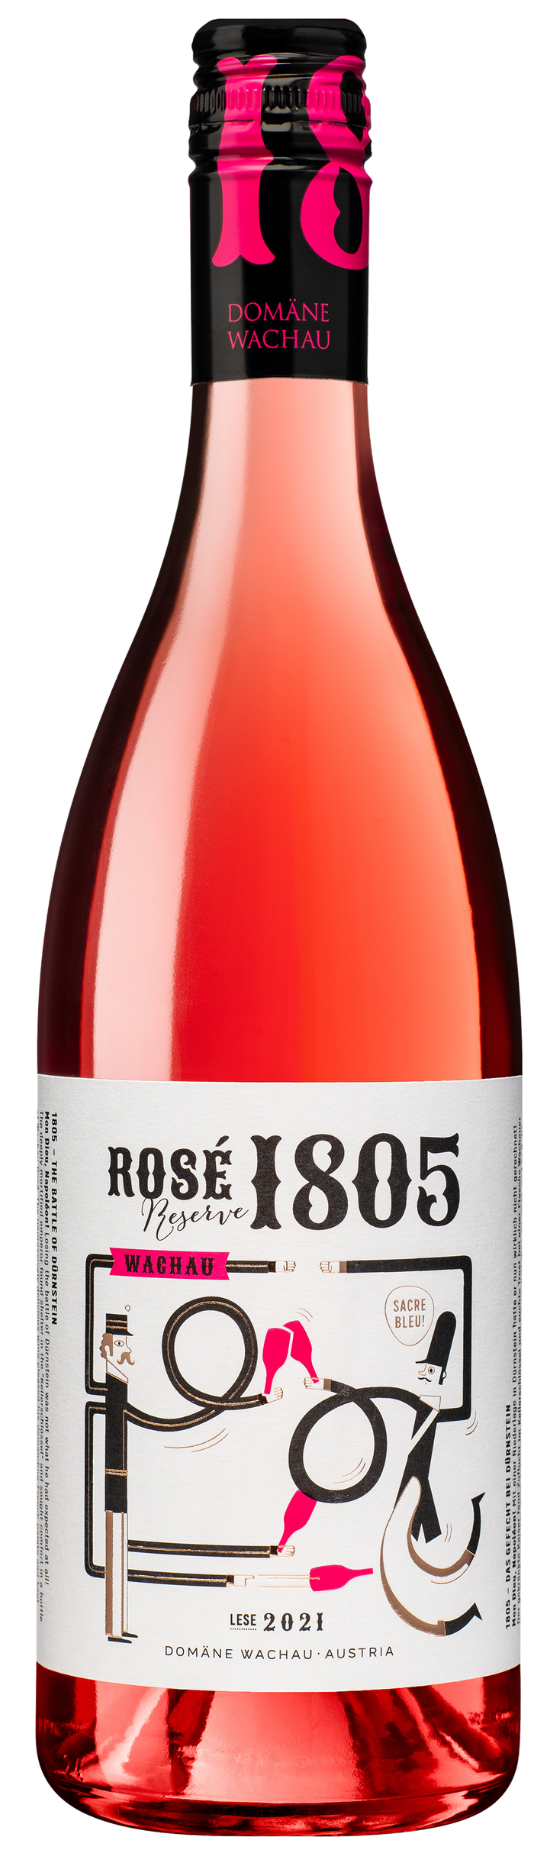 Rosé 1805 Reserve